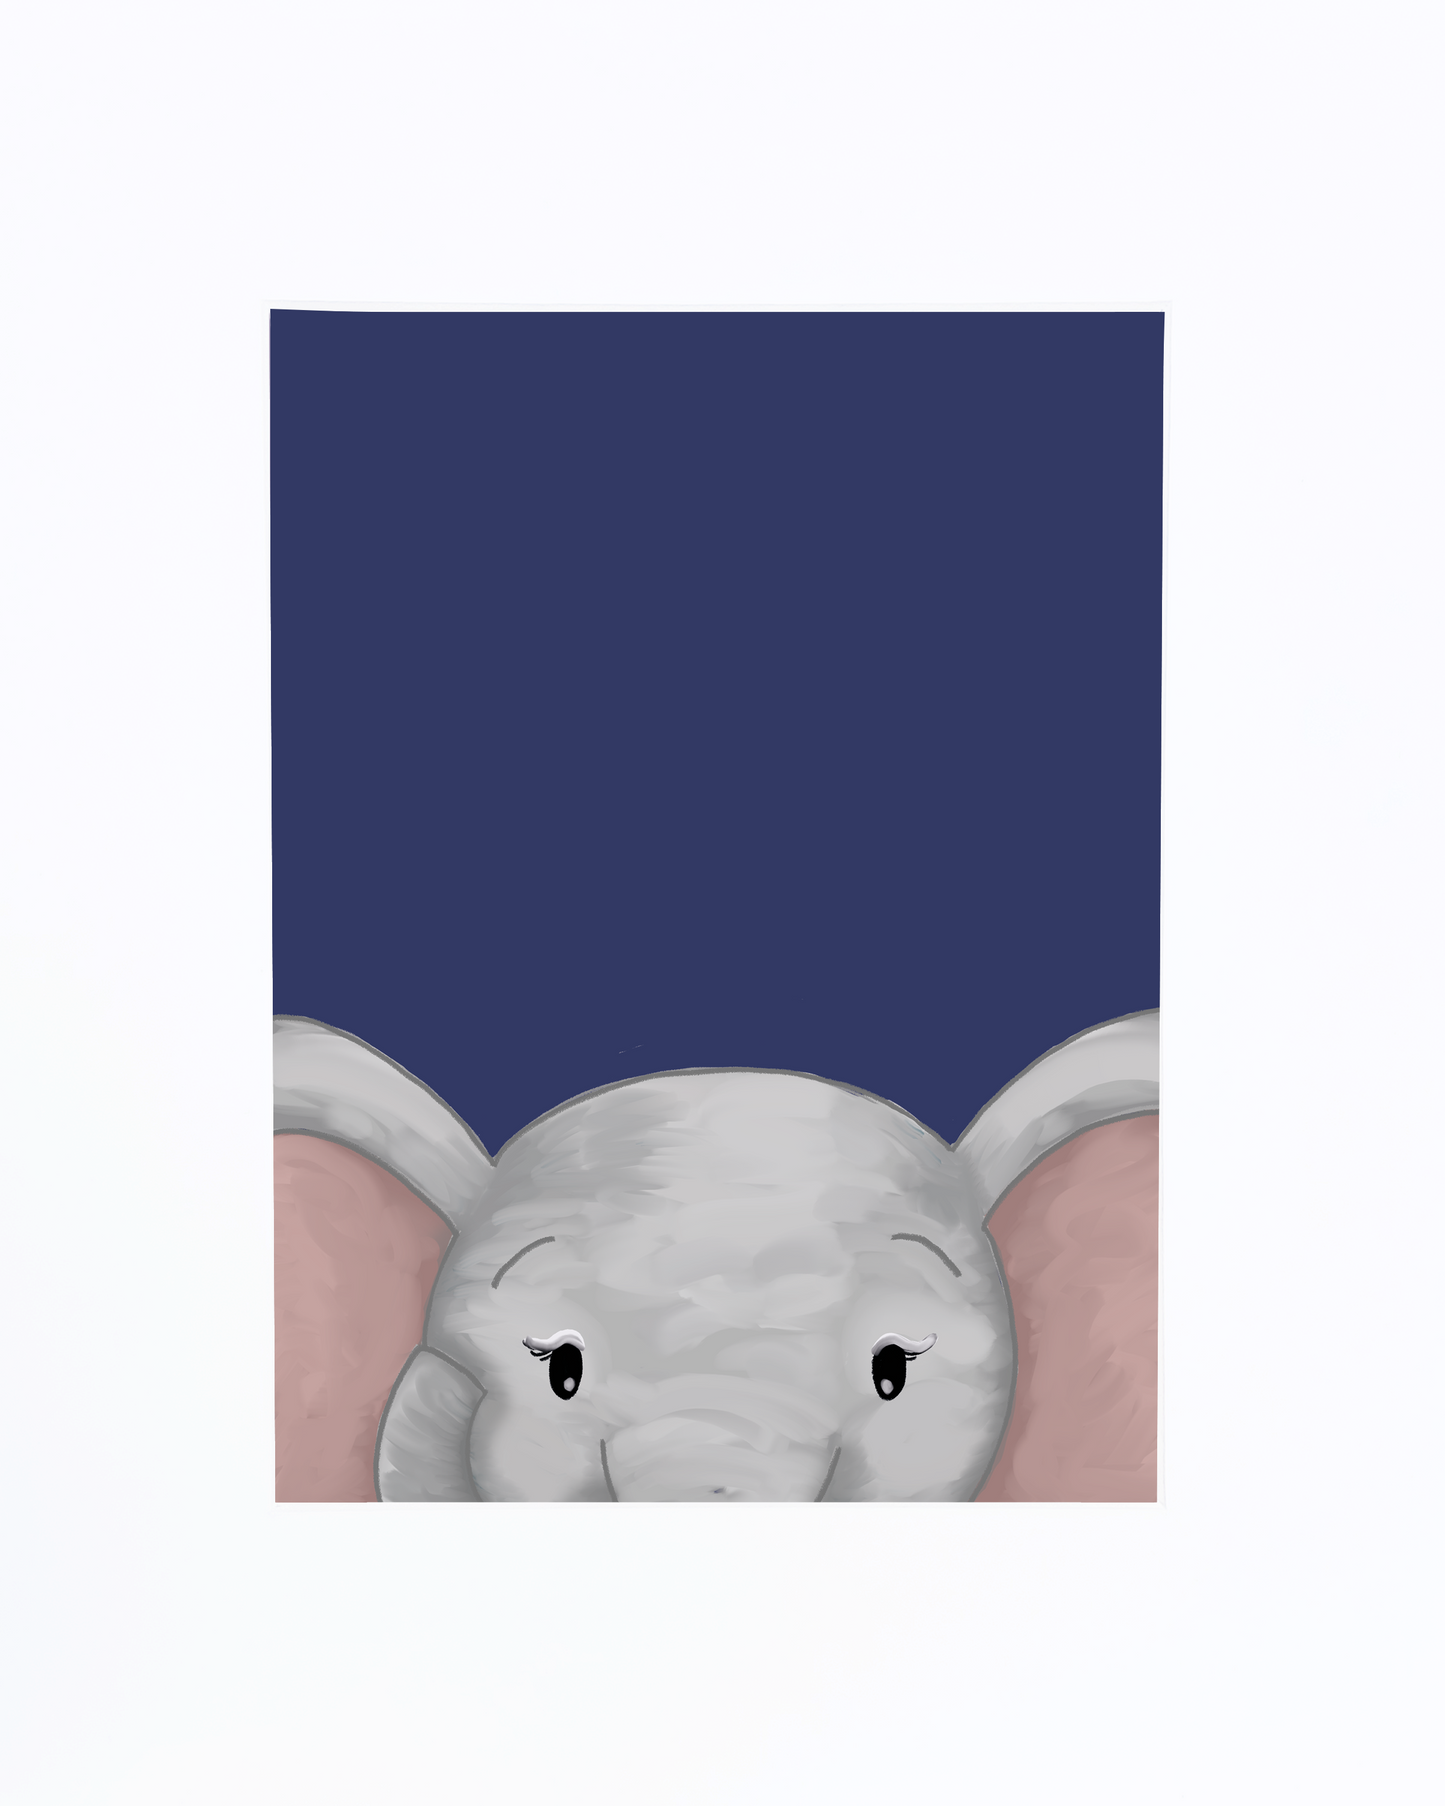 Little Elephant in Navy